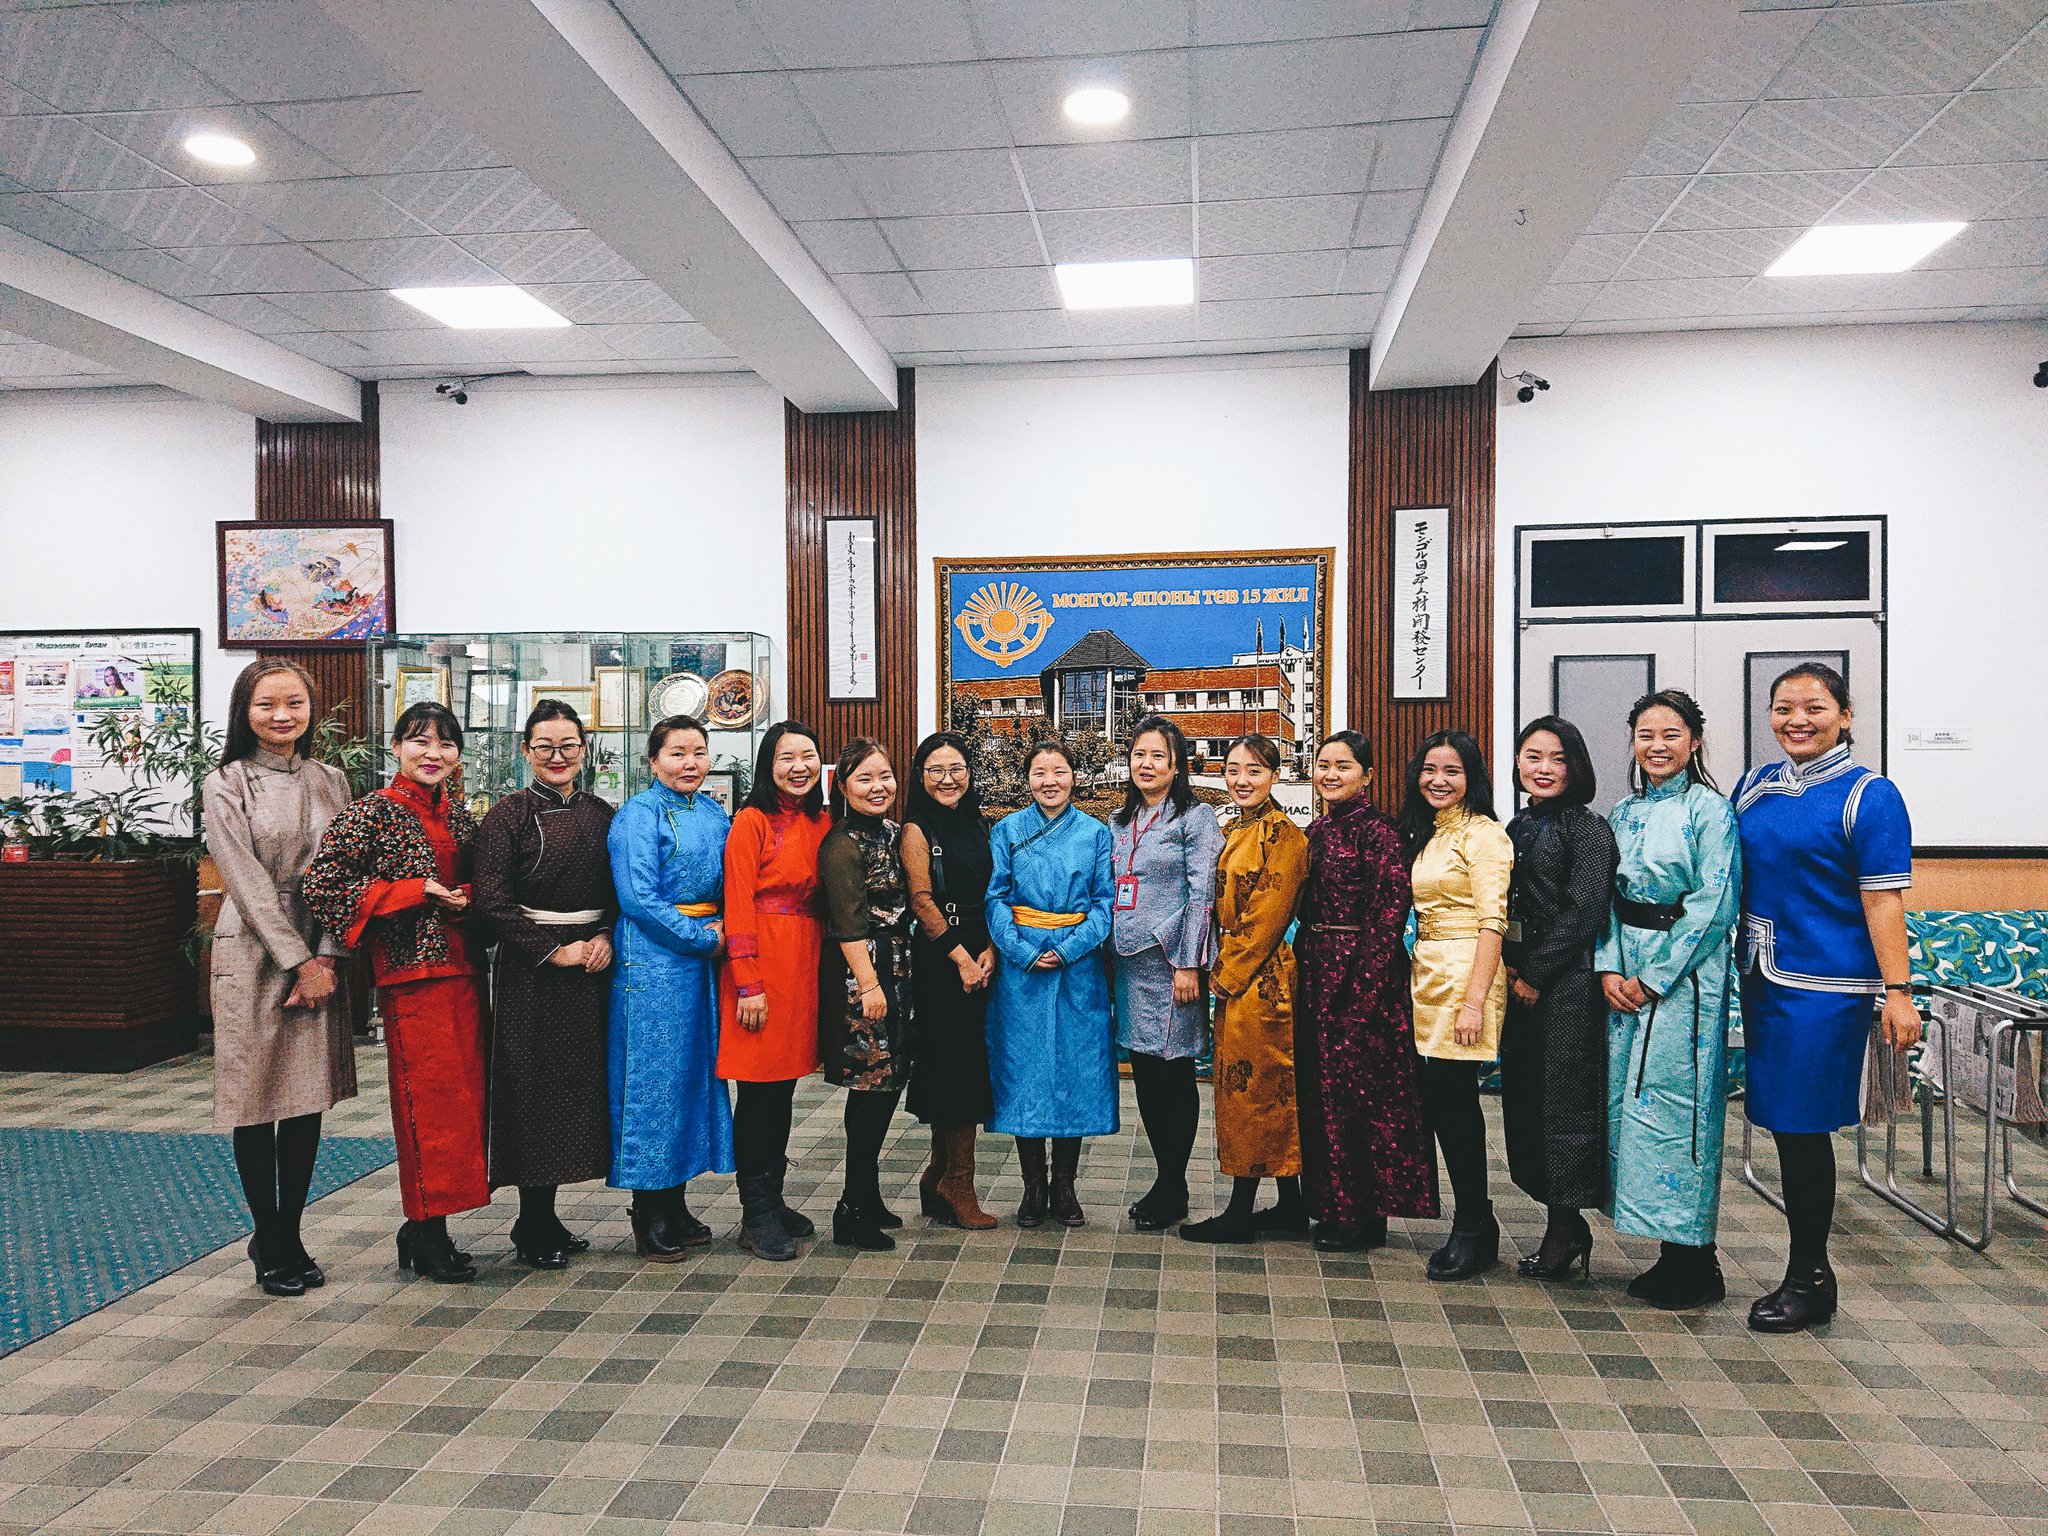 モンゴル日本センター公式 ビジネス交流 日本センターは本日旧正月明け最初の出勤日となります 女性スタッフはモンゴル の民族衣装であるデールを着てお客様をお出迎え致します 一言にデールと言っても様々なデザインがあります モンゴル 旧正月